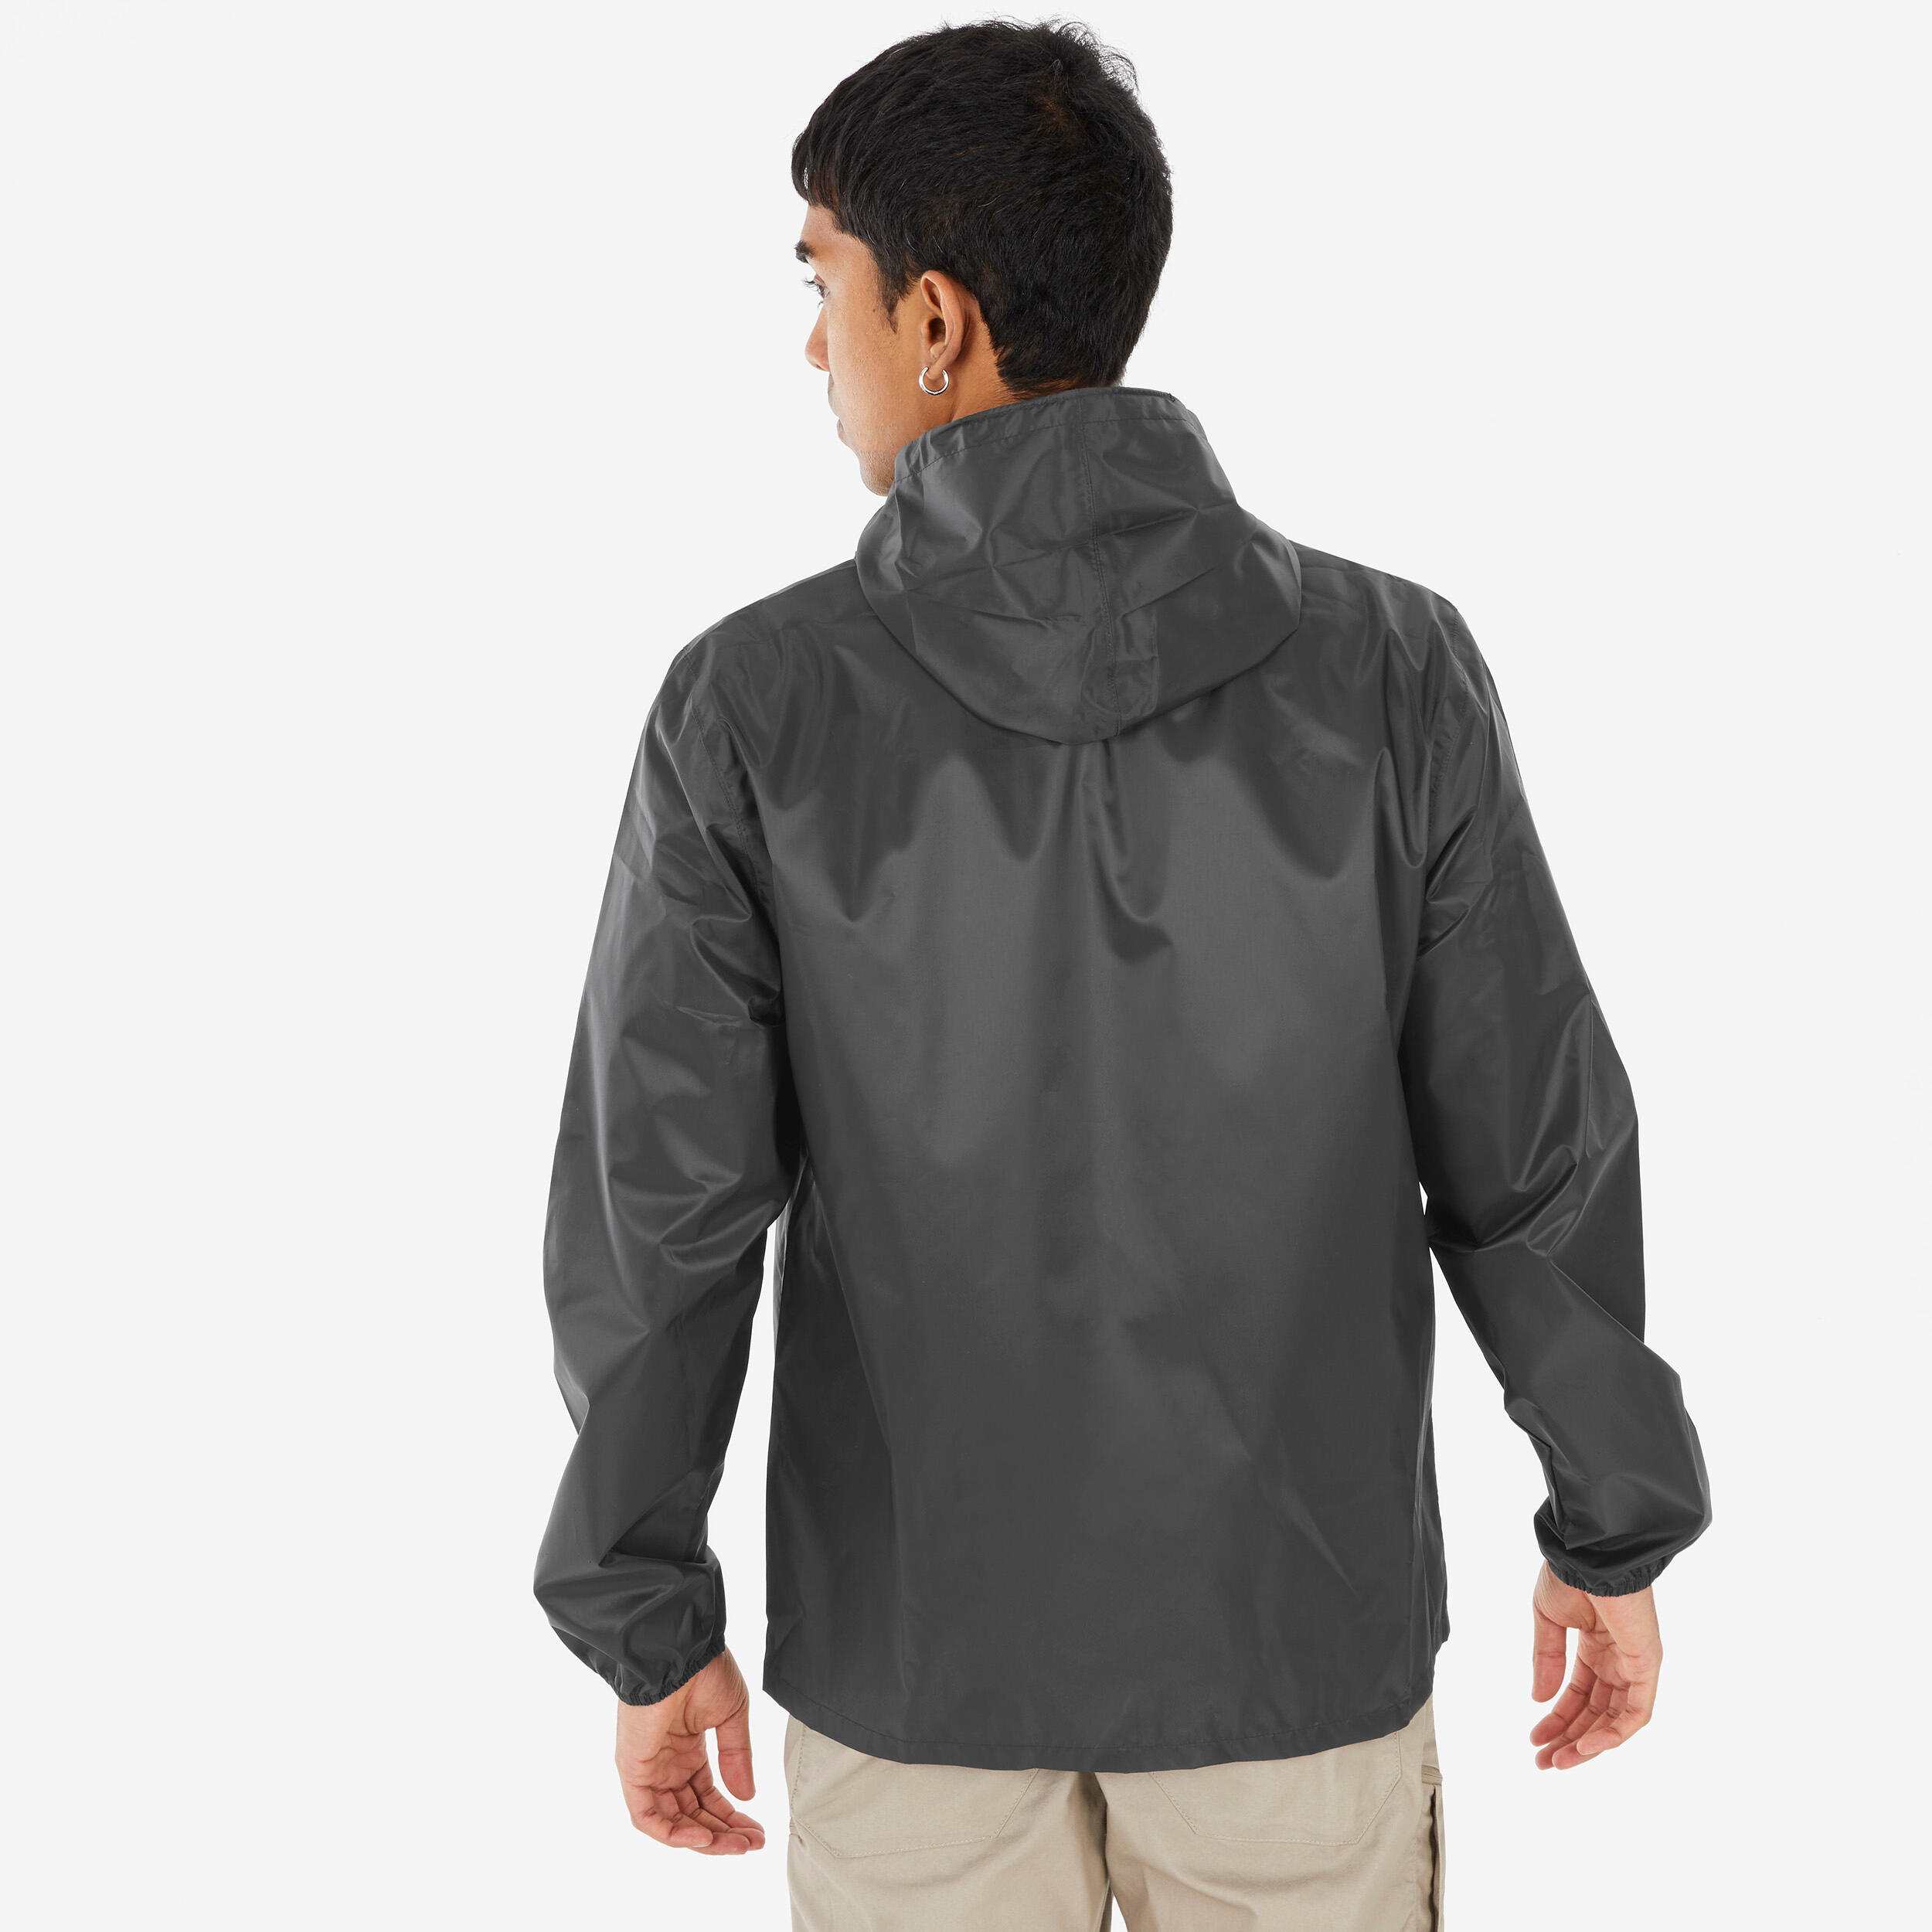 Men’s Waterproof Hiking Jacket - Raincut